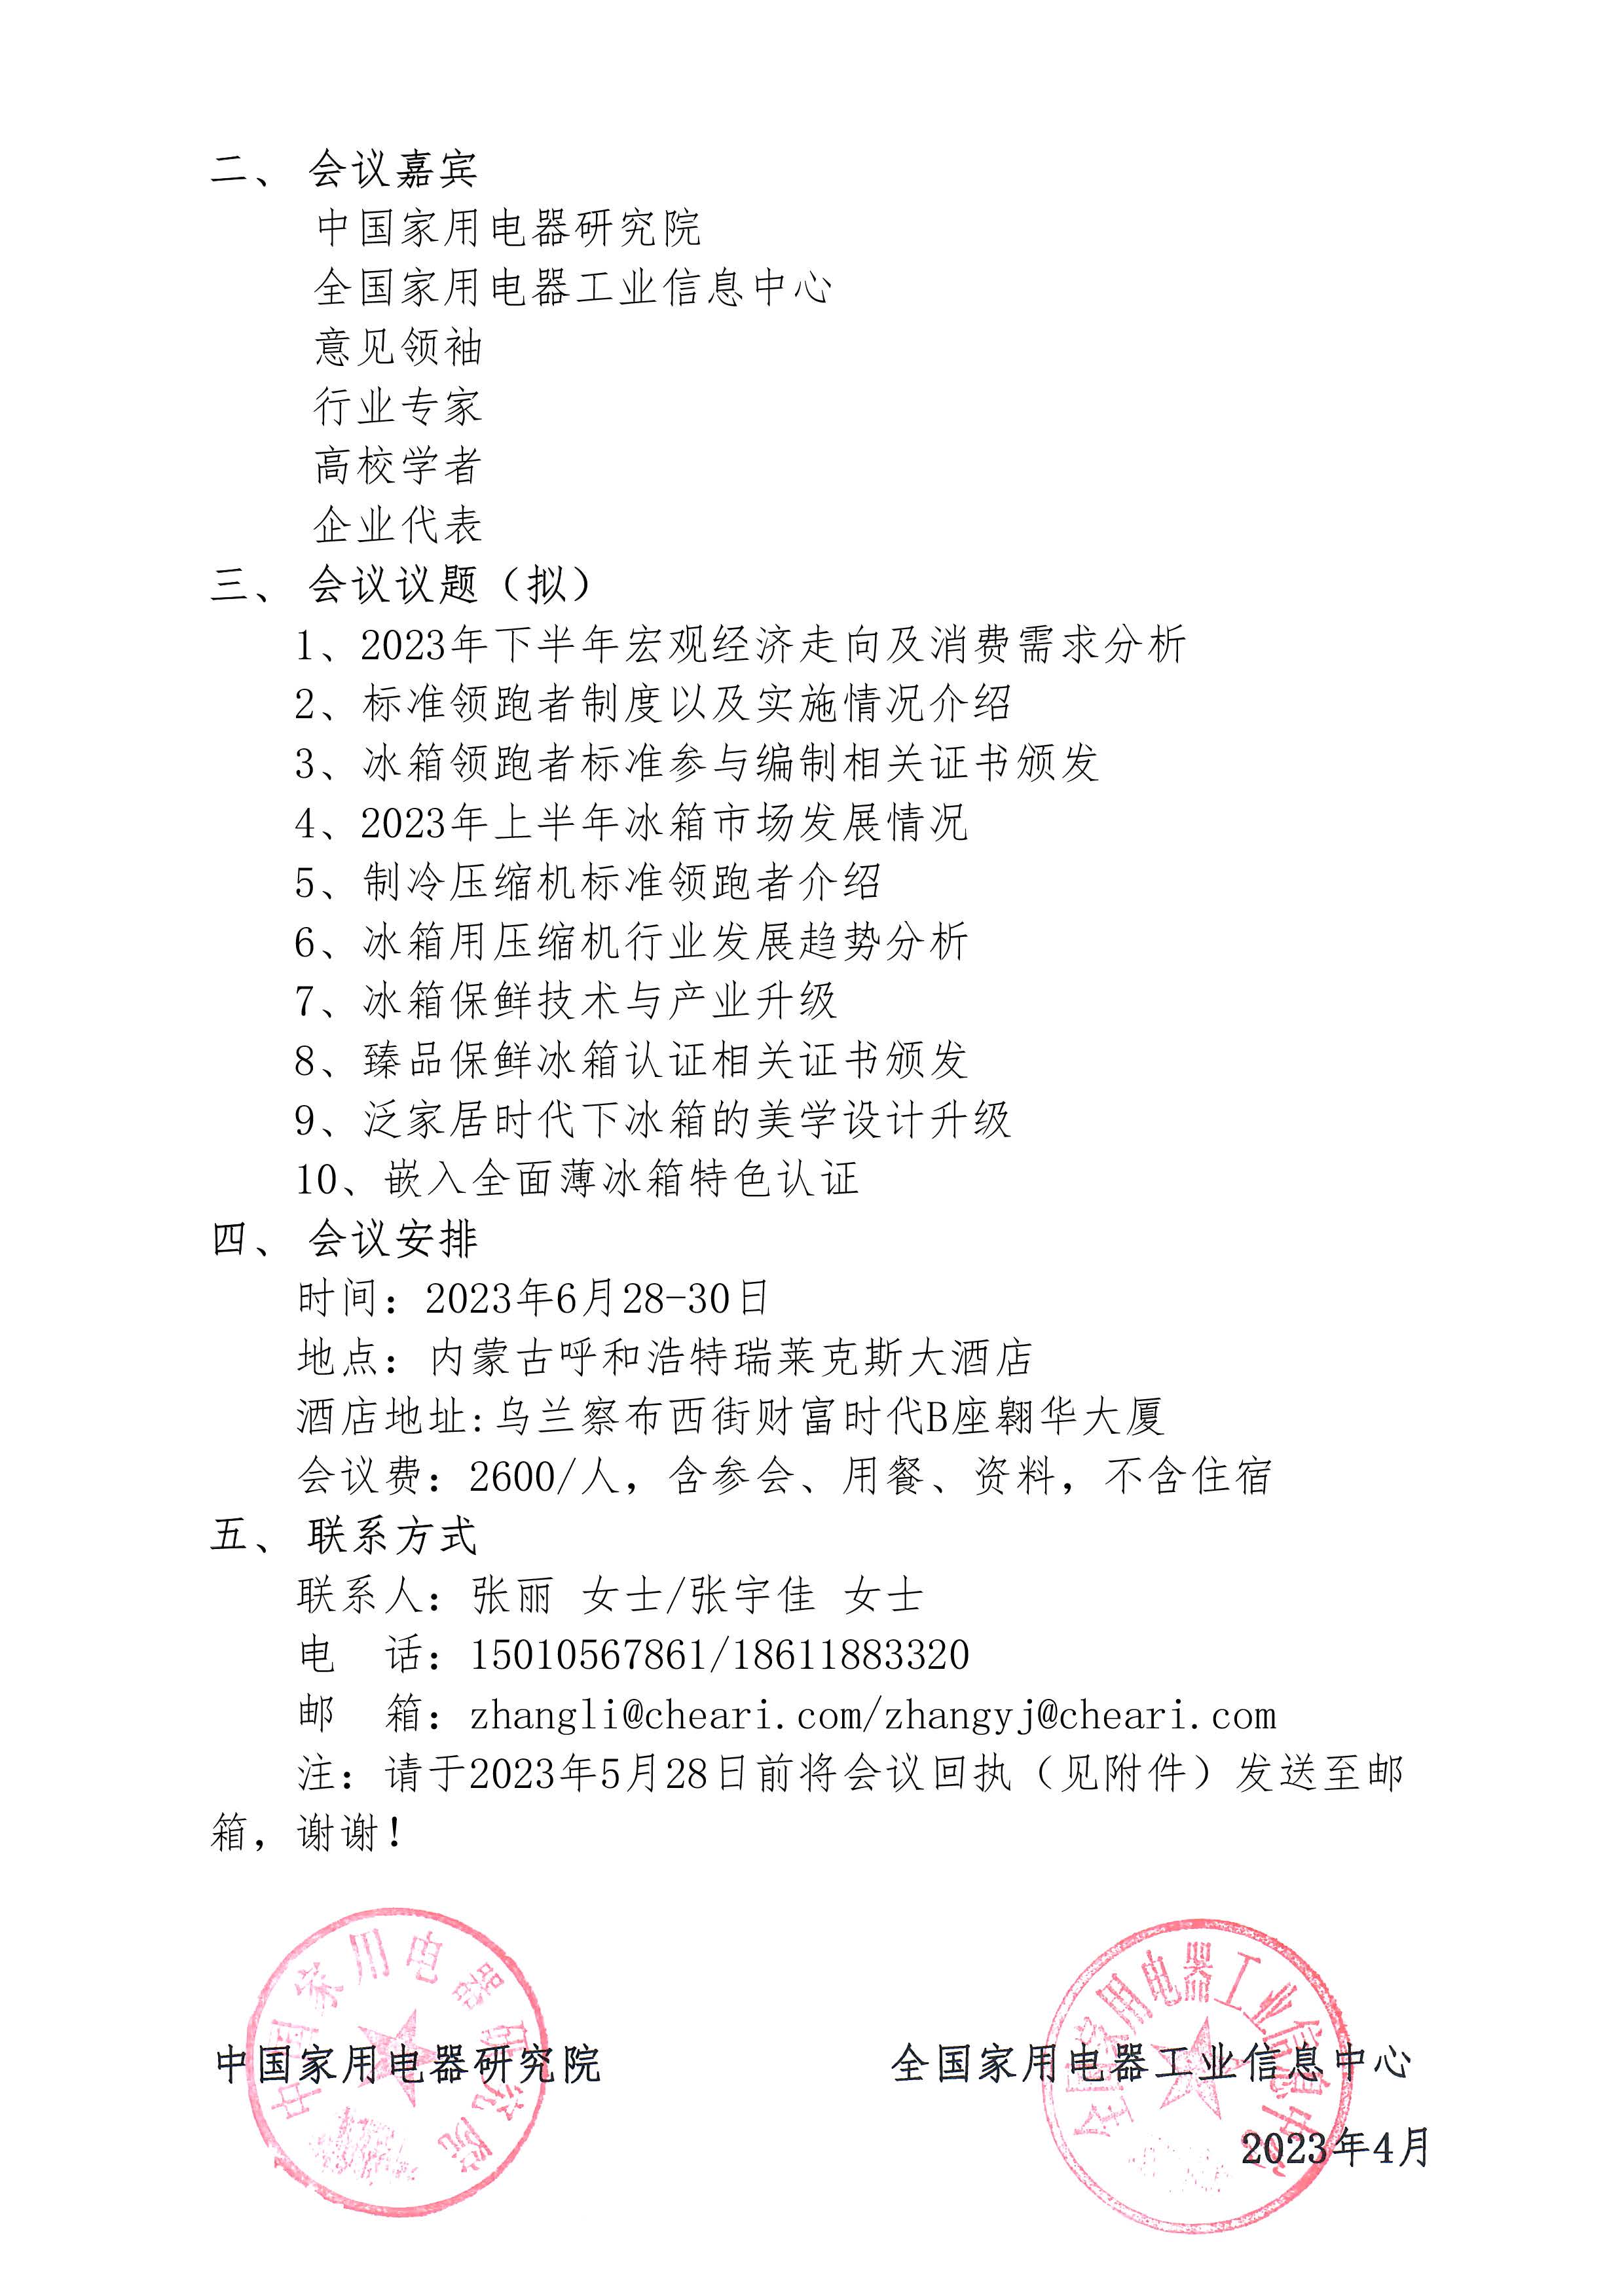 1-【会议通知】2023年中国电冰箱行业高峰论坛会议通知_页面_2.jpg